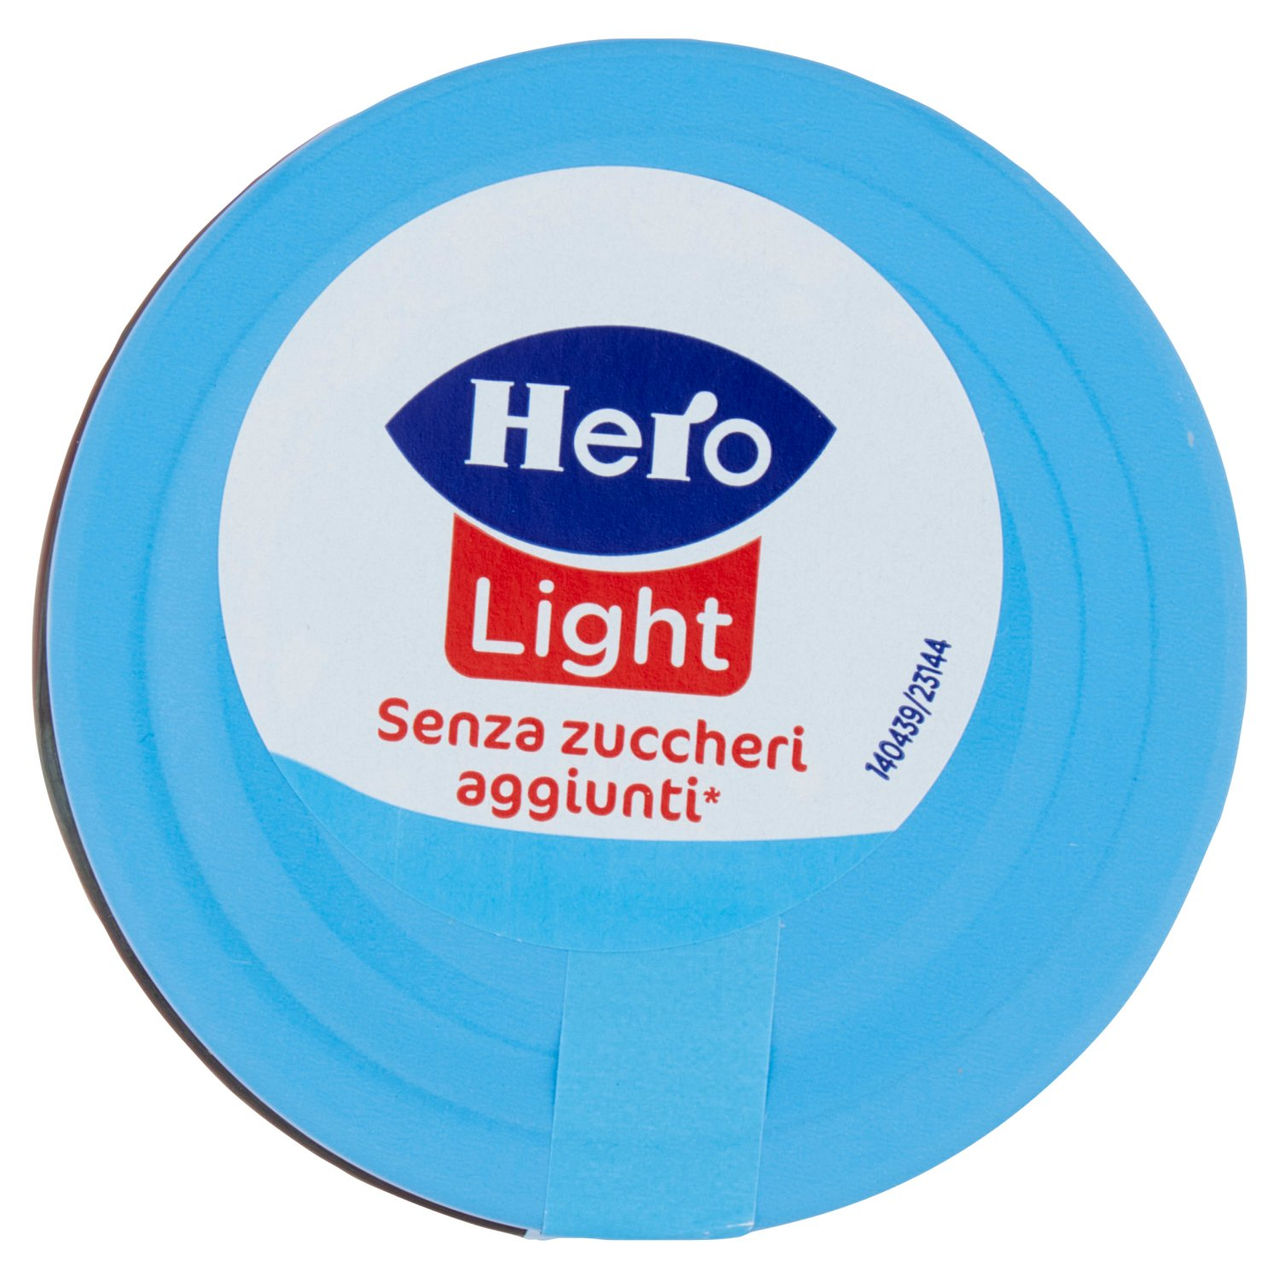 Hero Light Fragole 280 g